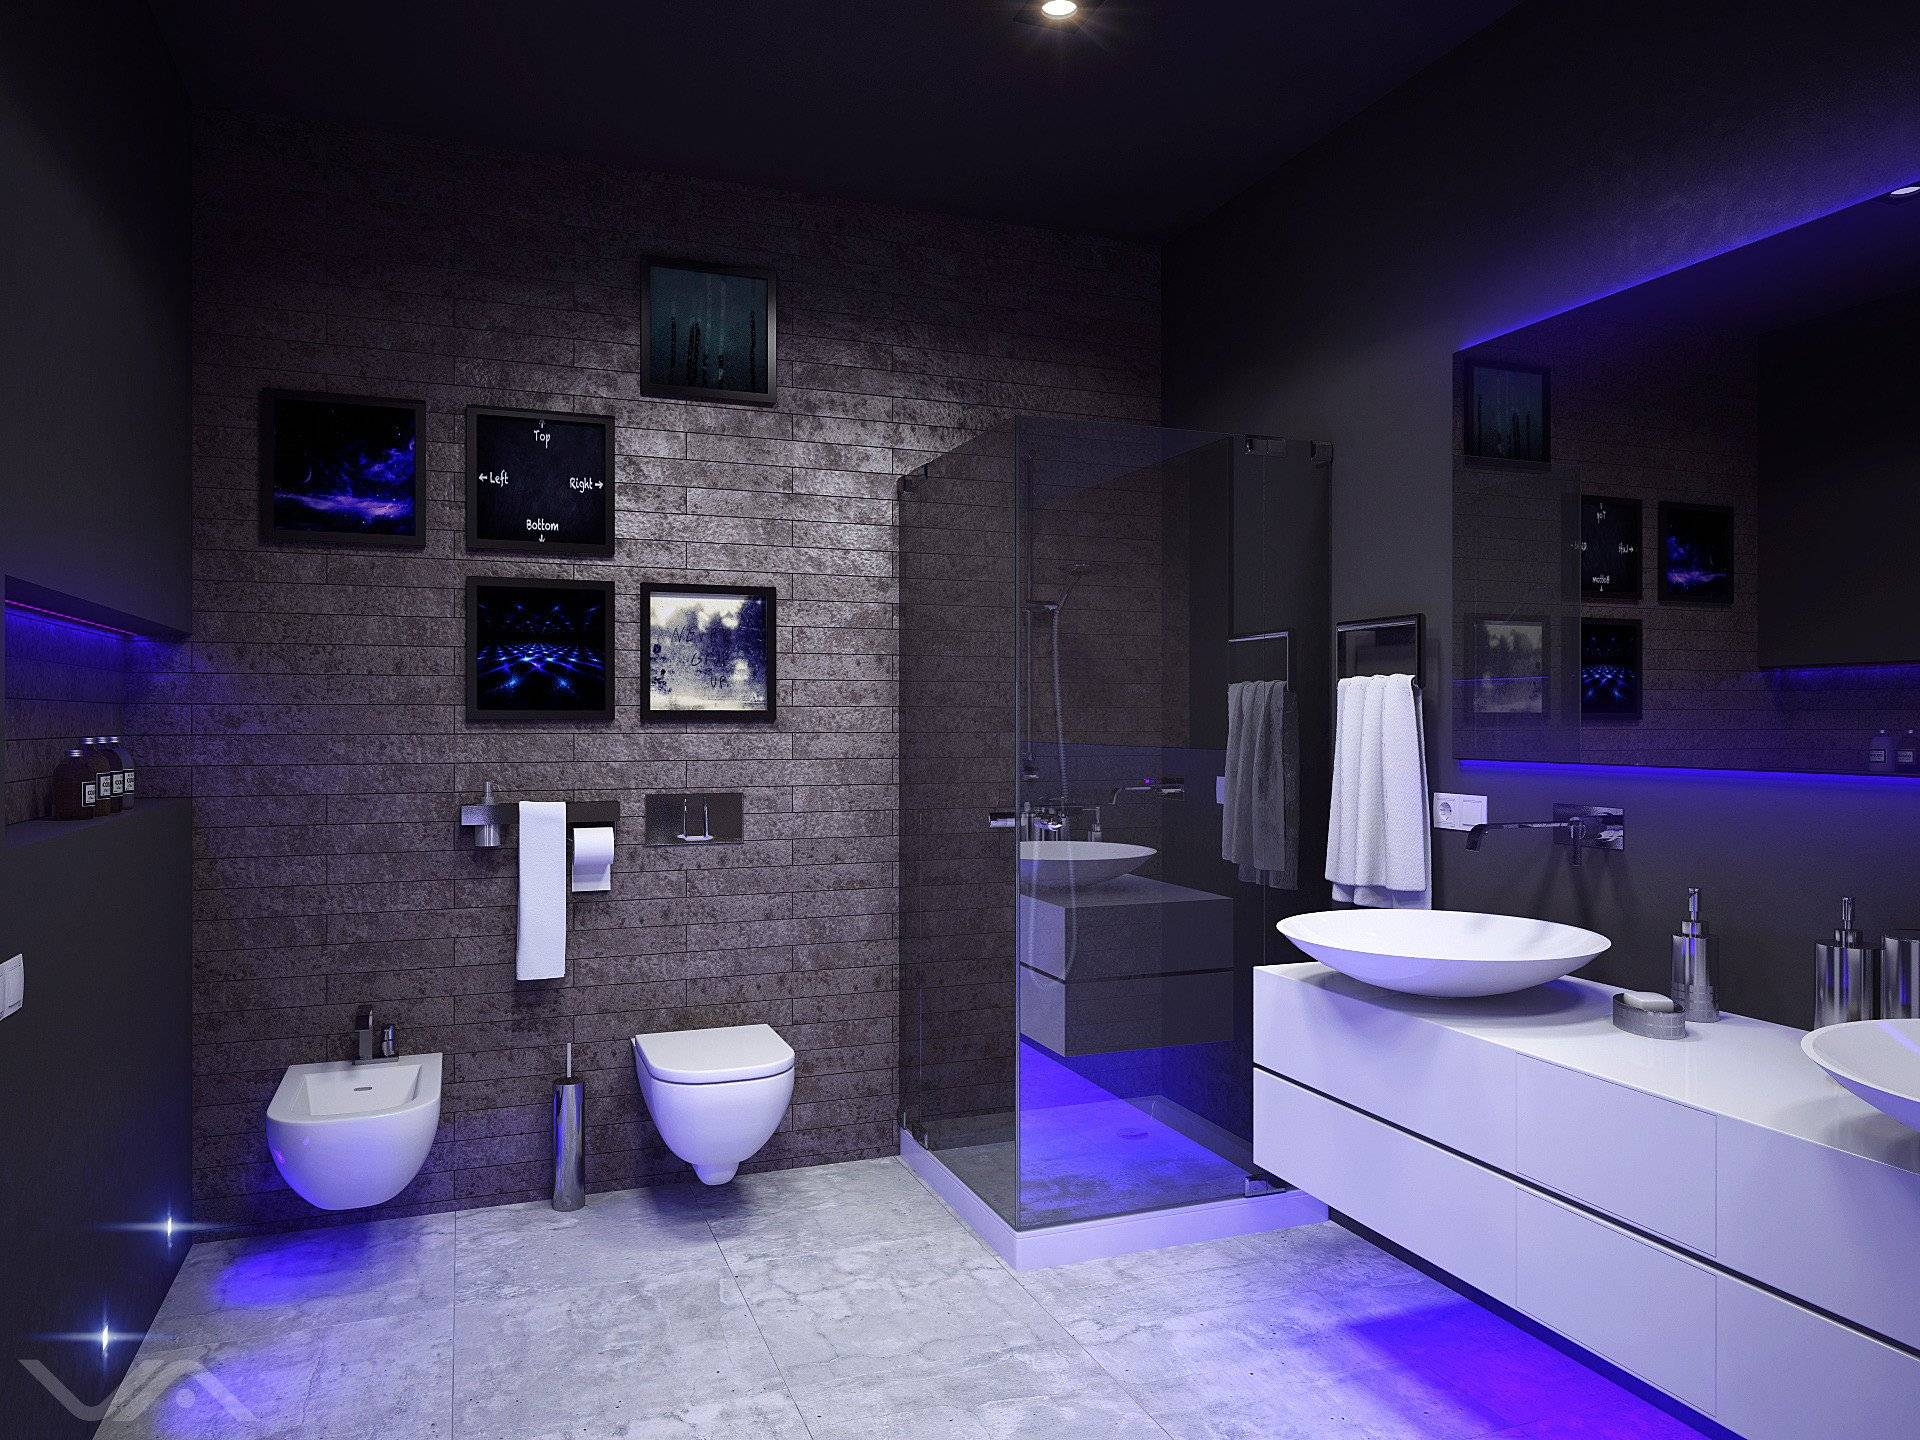 Ванная в стиле хай-тек — новинки интерьера и проектирование ванной в современном стиле (75 фото)